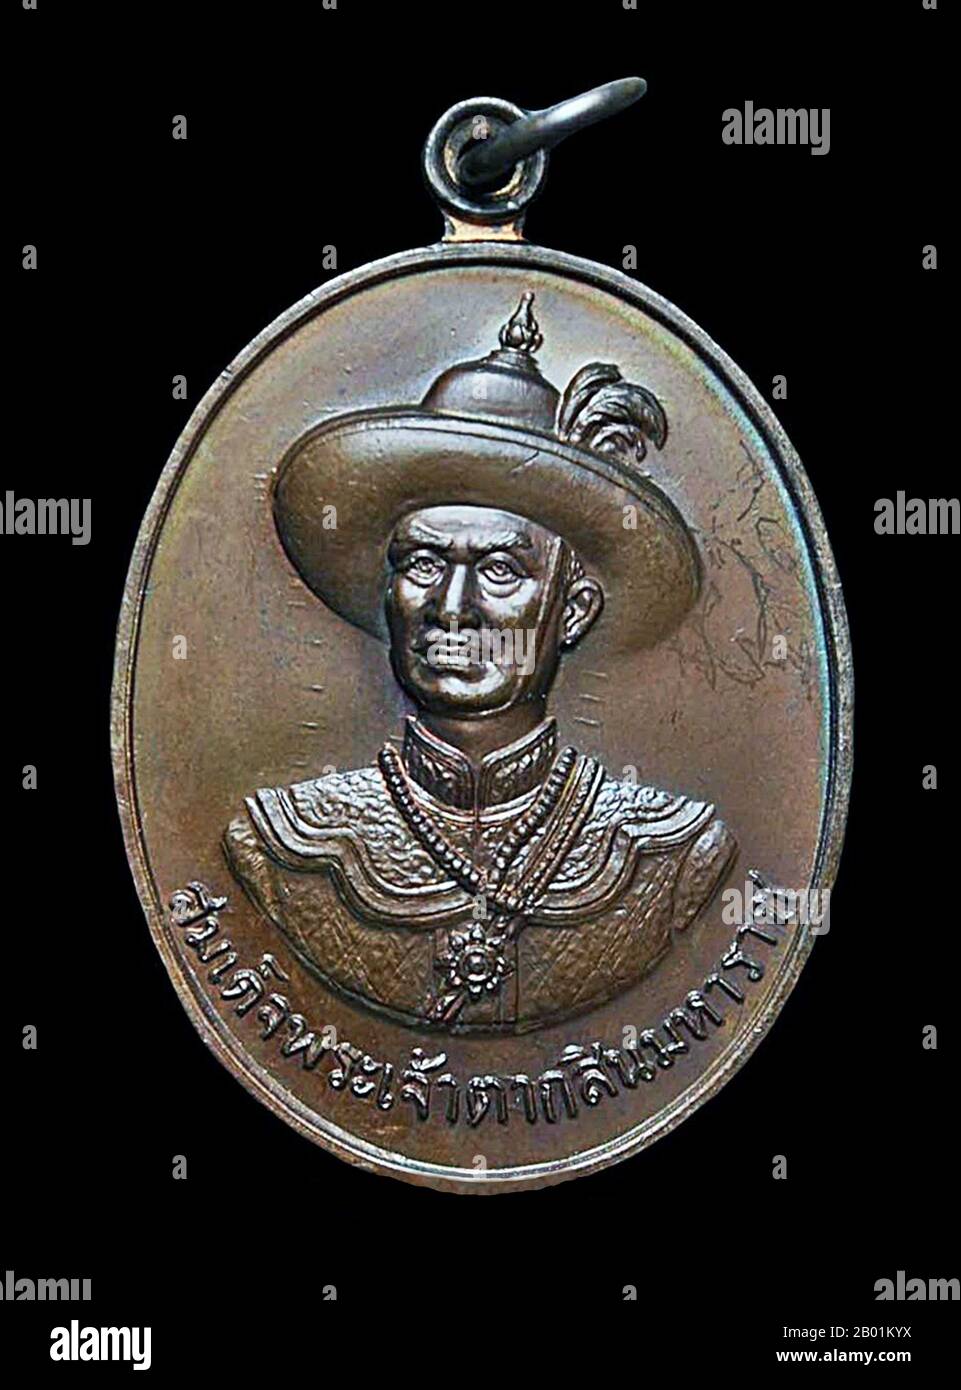 Thaïlande : Amulette représentant le roi Taksin le Grand (17 avril 1734 - 7 avril 1782), roi du Siam (r. 1768-1782). Taksin (Somdet Phra Chao Taksin Maharat) était le seul roi du Royaume de Thonburi. Il est grandement vénéré par le peuple thaïlandais pour son leadership dans la libération du Siam de l'occupation birmane après la deuxième chute d'Ayutthaya en 1767, et l'unification ultérieure du Siam après sa chute sous divers seigneurs de guerre. Il établit la ville de Thonburi comme la nouvelle capitale, car la ville Ayutthaya avait été presque complètement détruite par les envahisseurs. Banque D'Images